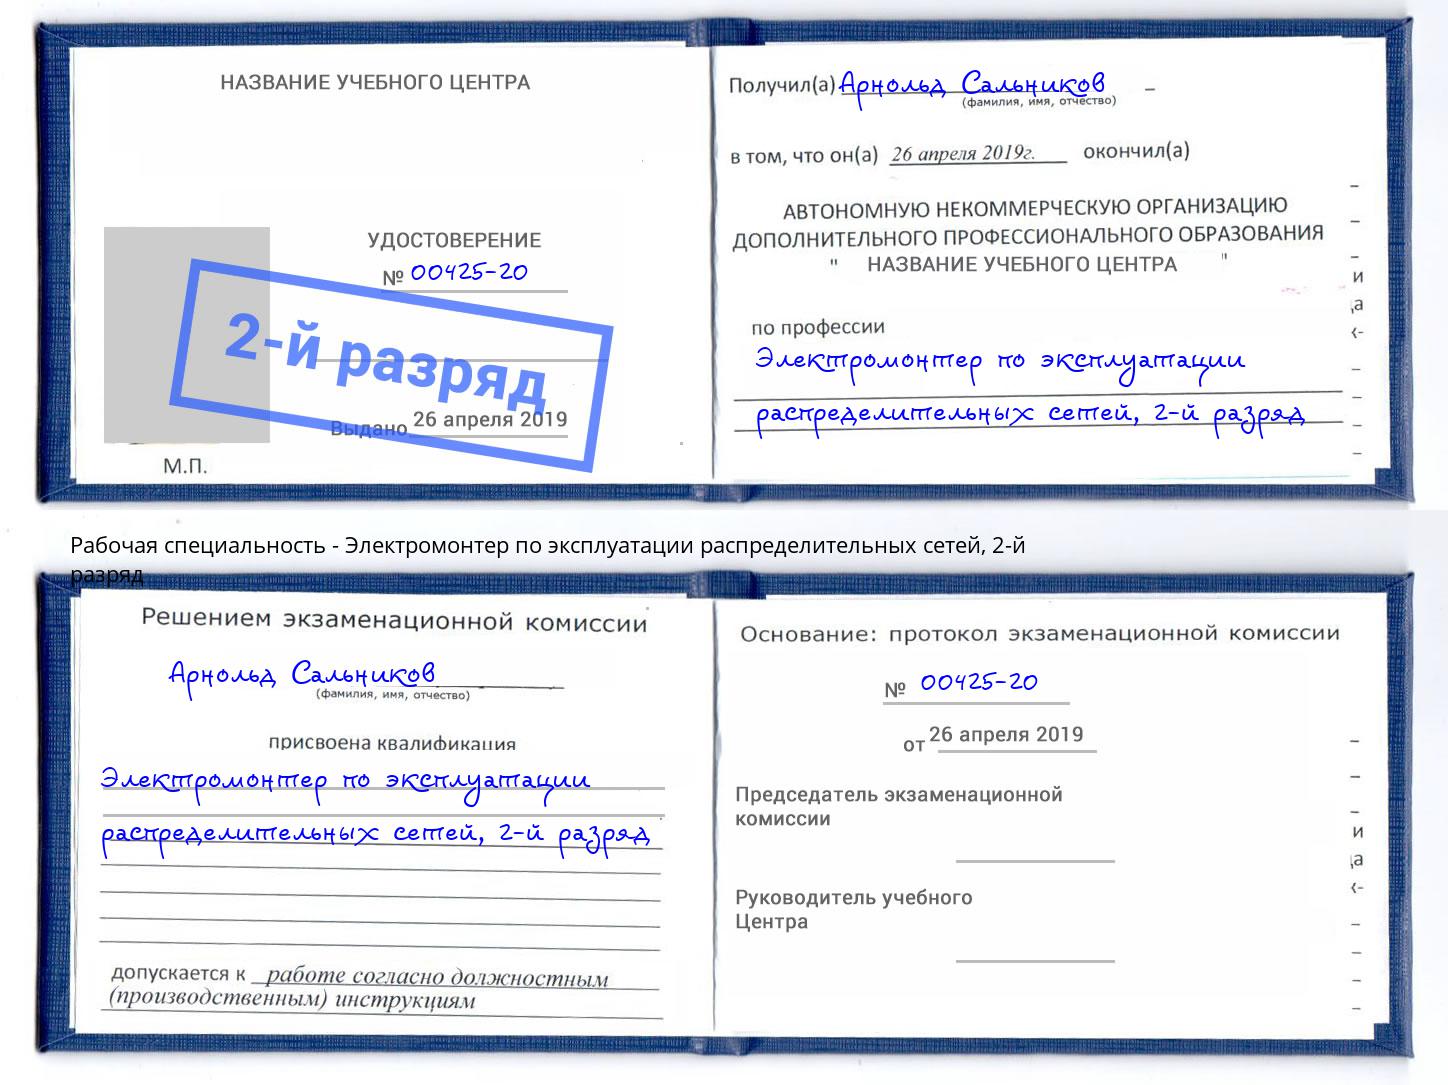 корочка 2-й разряд Электромонтер по эксплуатации распределительных сетей Петропавловск-Камчатский